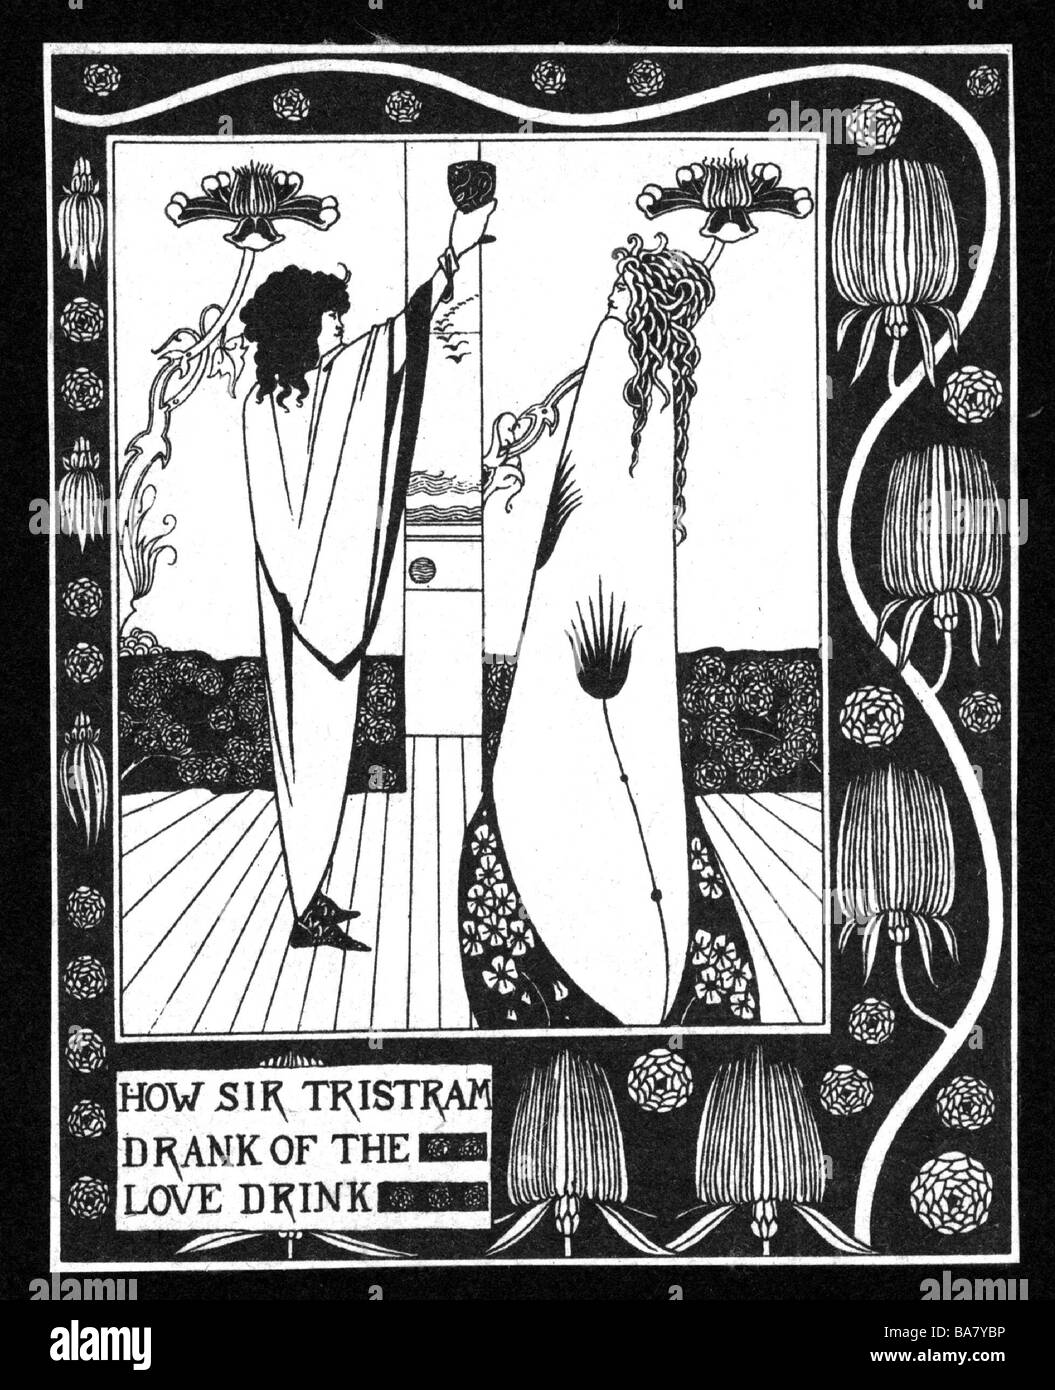 Tristan, figura mitica, scena, bevendo la pozione d'amore, accanto a lui Iseult, disegno di Aubrey Beardsley (1872 - 1898), fine 19th secolo, Foto Stock